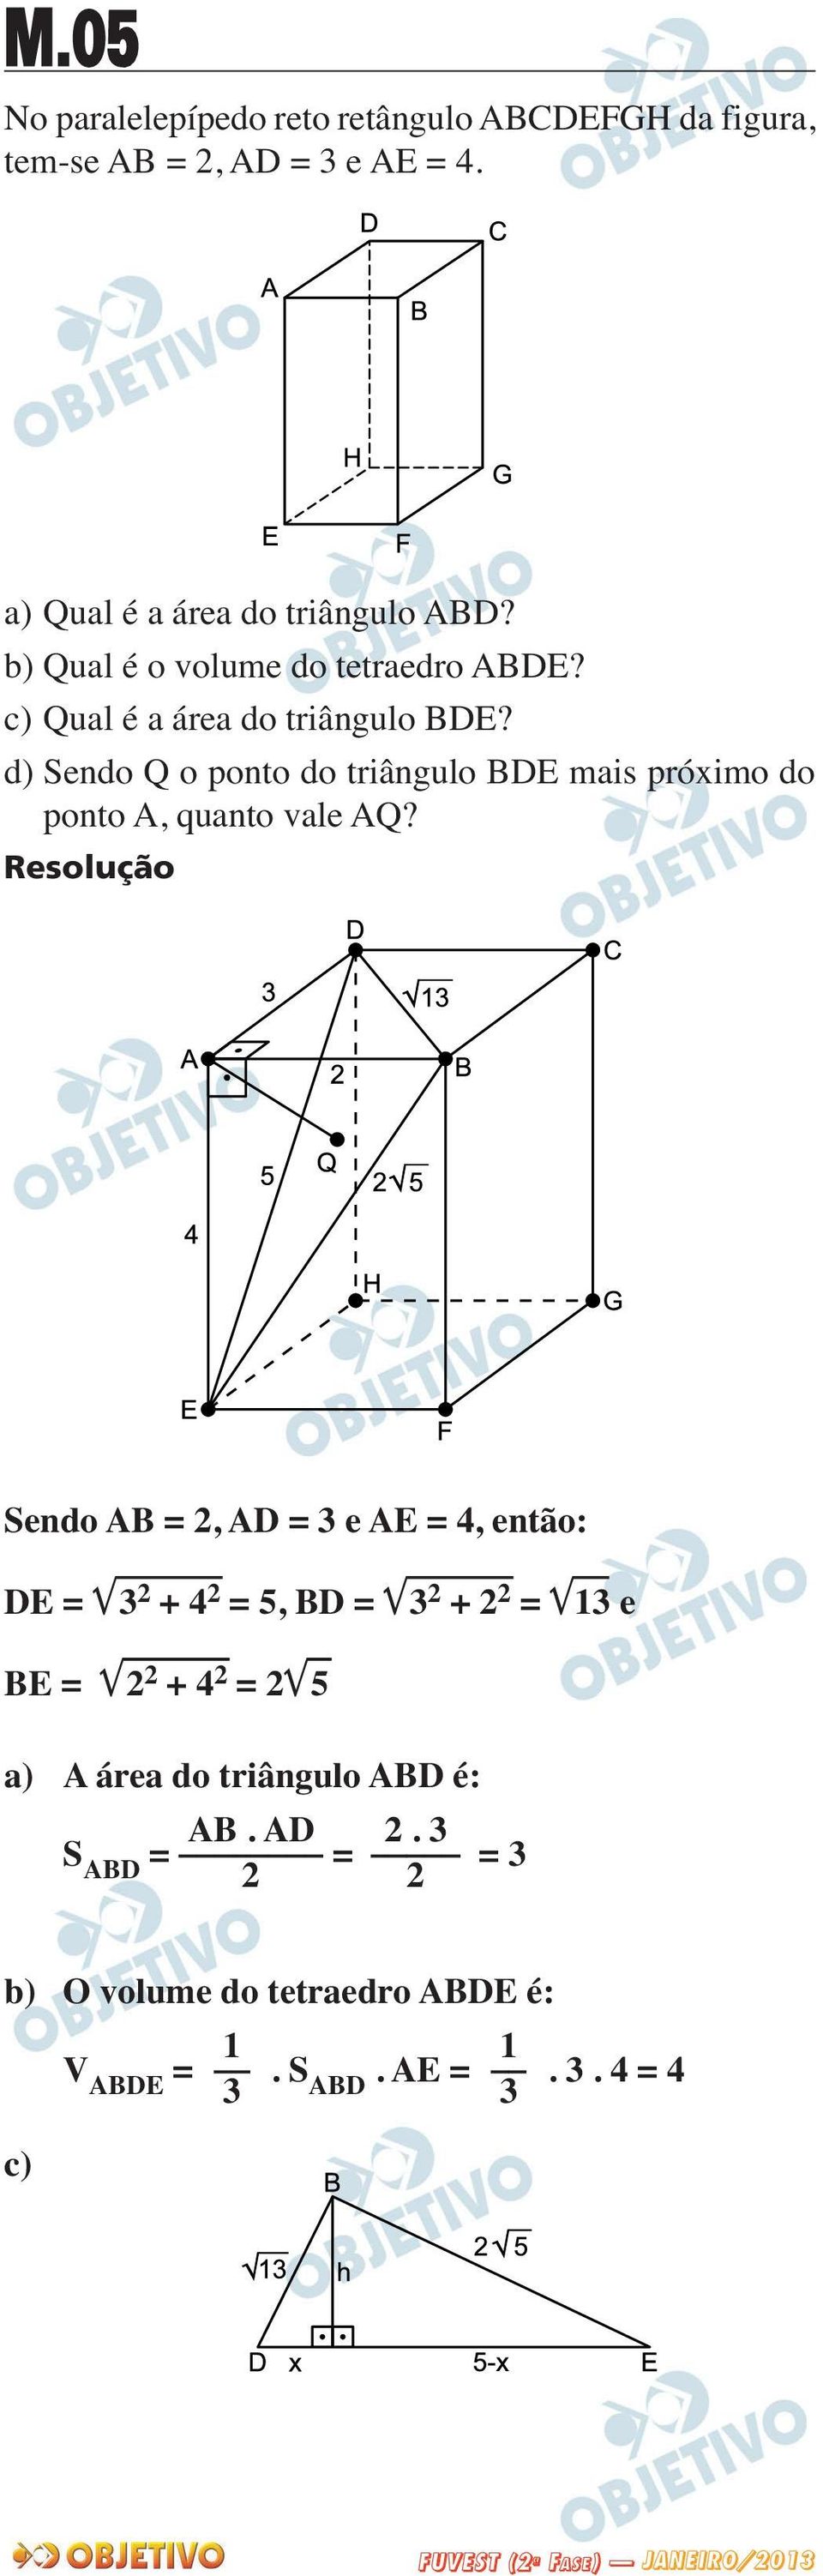 d) Sendo Q o ponto do triângulo BDE mais próximo do ponto A, quanto vale AQ?